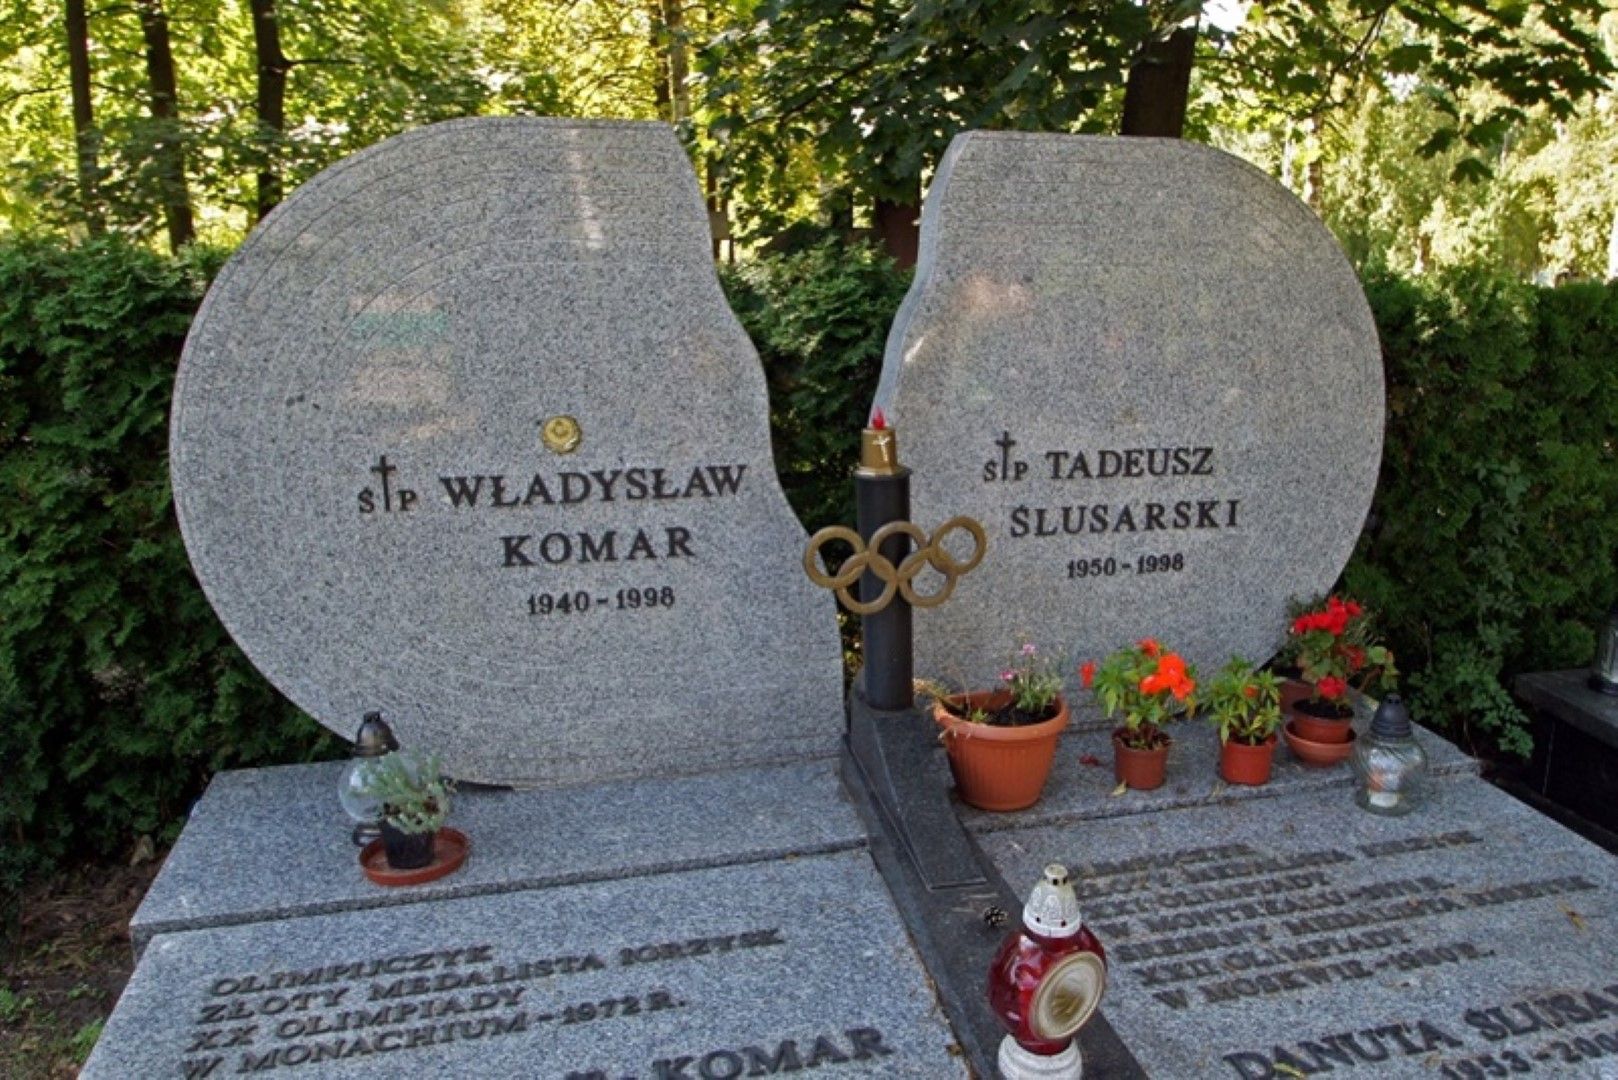 Владислав Комар и Тадеуш Слюсарски Два от символите на полския спорт си отидоха заедно,   смразяващо подобно на трагедията с Гунди и Котков. Плочата   над гробовете им изглежда така. Двамата загинаха в   катастрофа край Пжибиернов през август 1998 г., когато Комар   бе на 58, а Слюсарски - на 48 г.